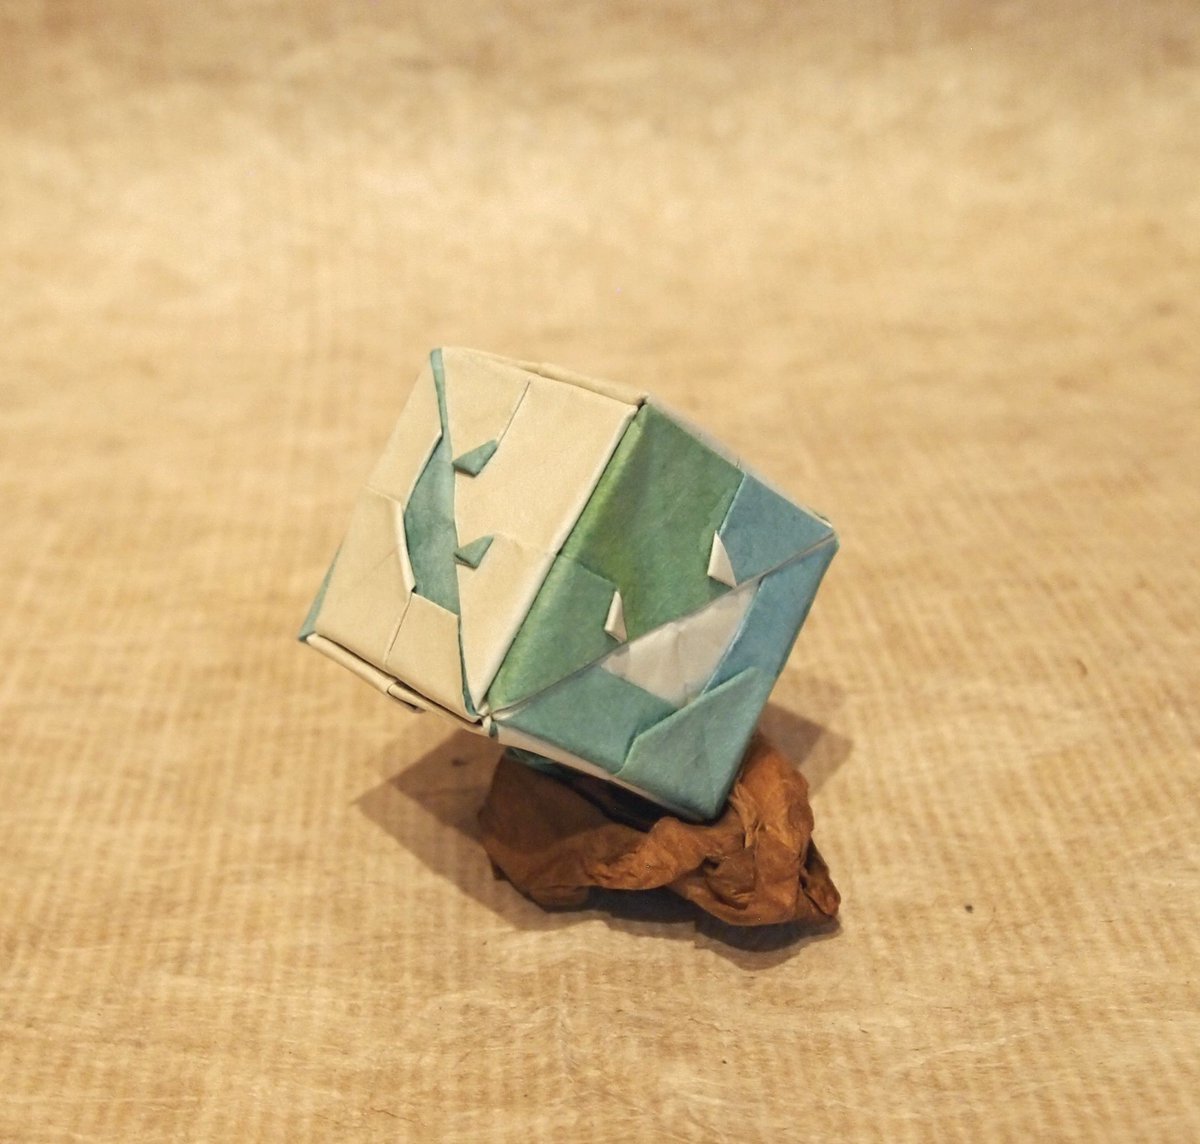 一匹柴犬 スマイルキューブ 創作 折り 一匹柴犬 折り紙作品 正方形6枚使用 ユニット作品って糊を使ったらｎｇであれば 非ユニット作品 折り紙 Origami